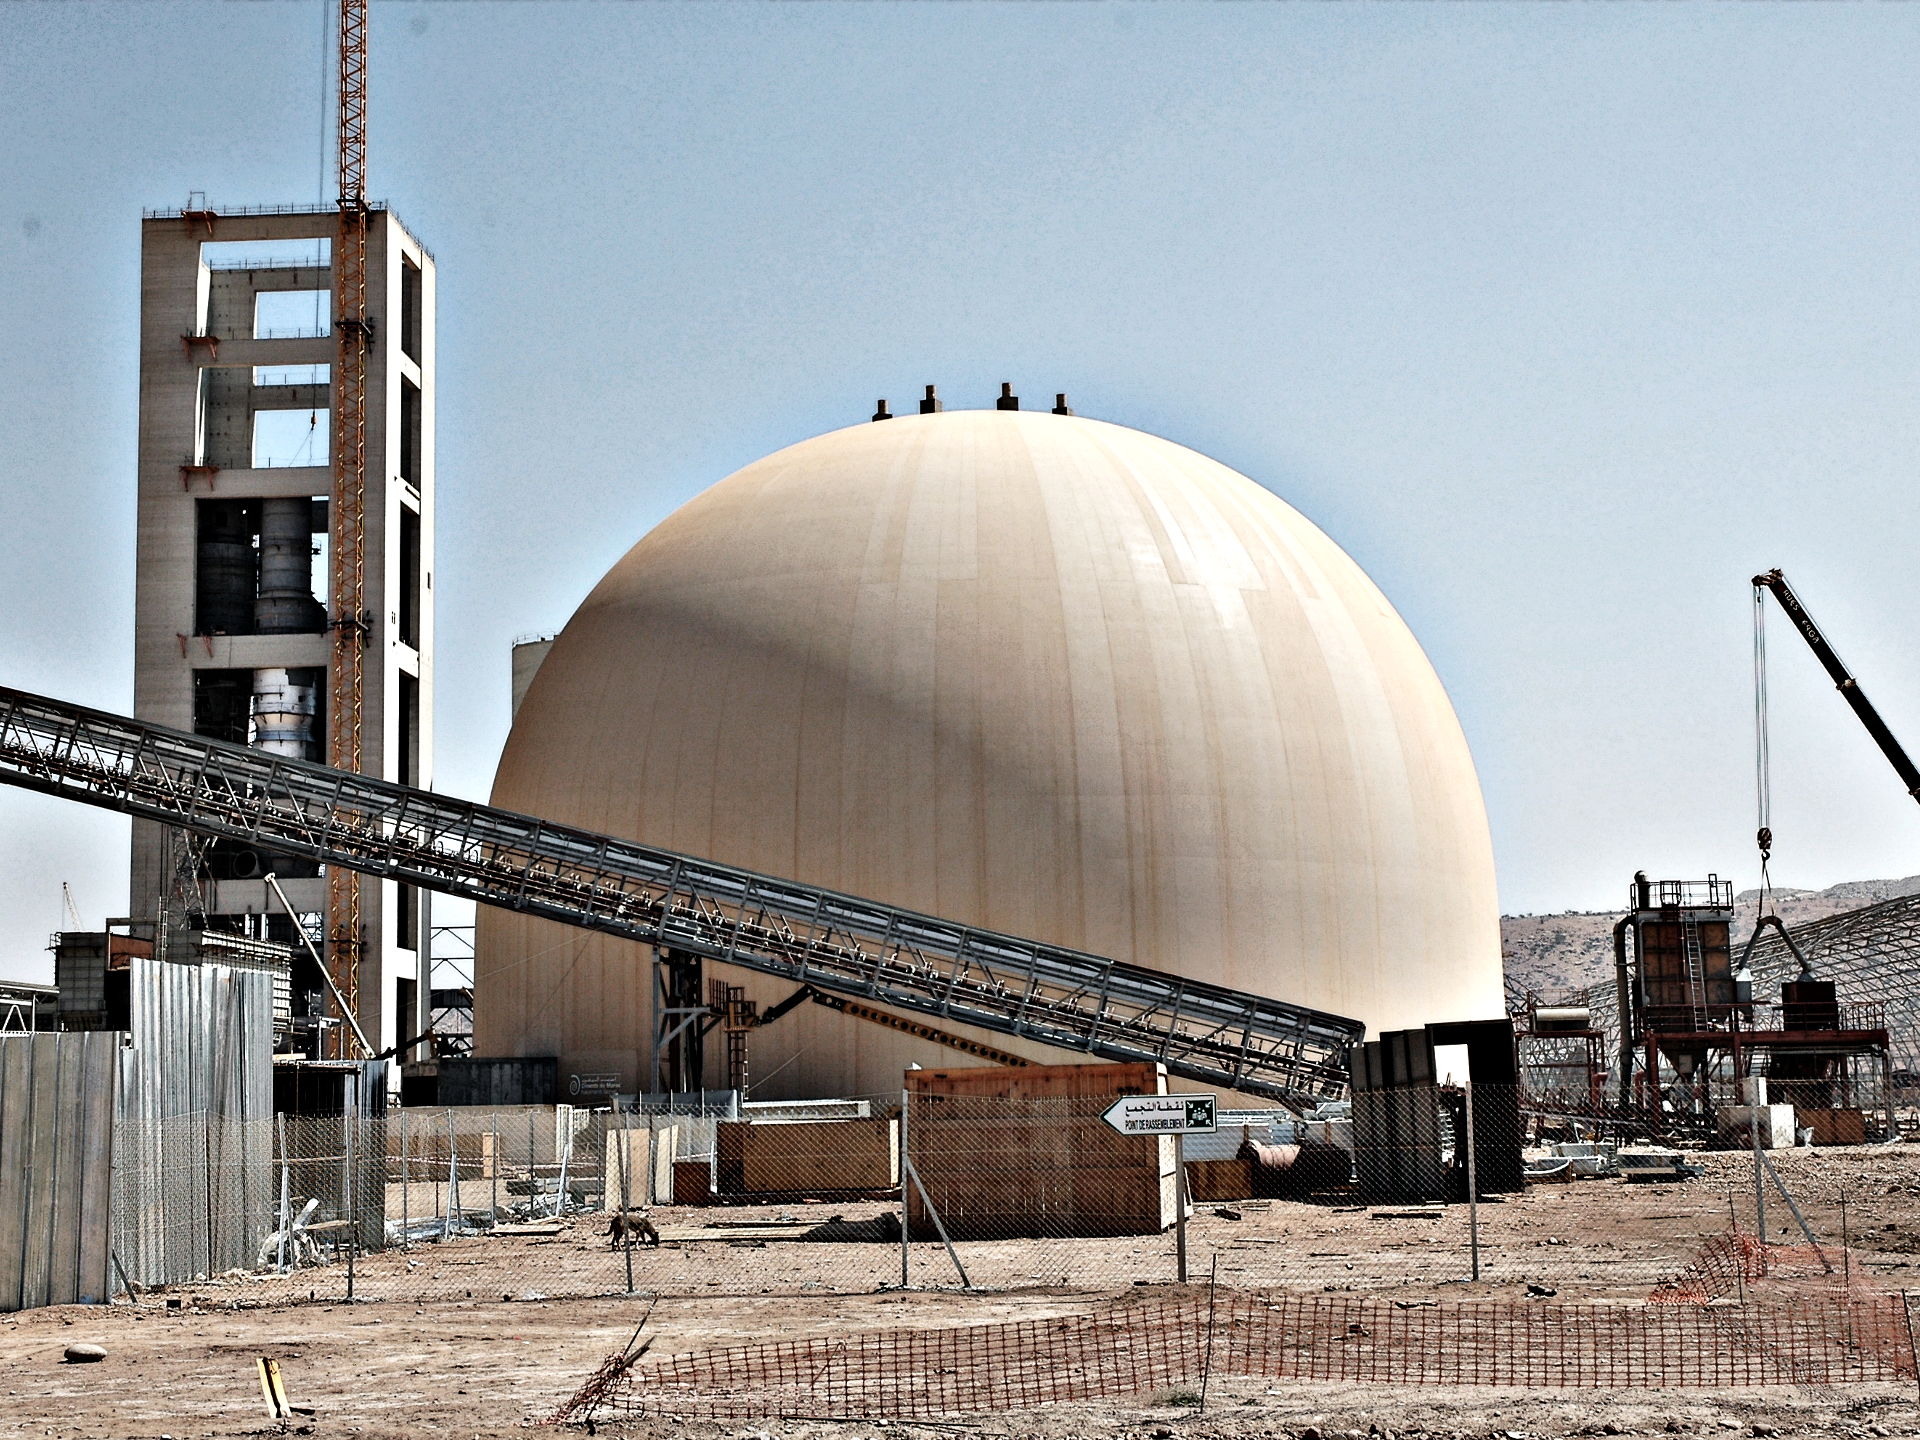 Ciments du Maroc Cement Plant - Clinker Bulk Storage - Morocco